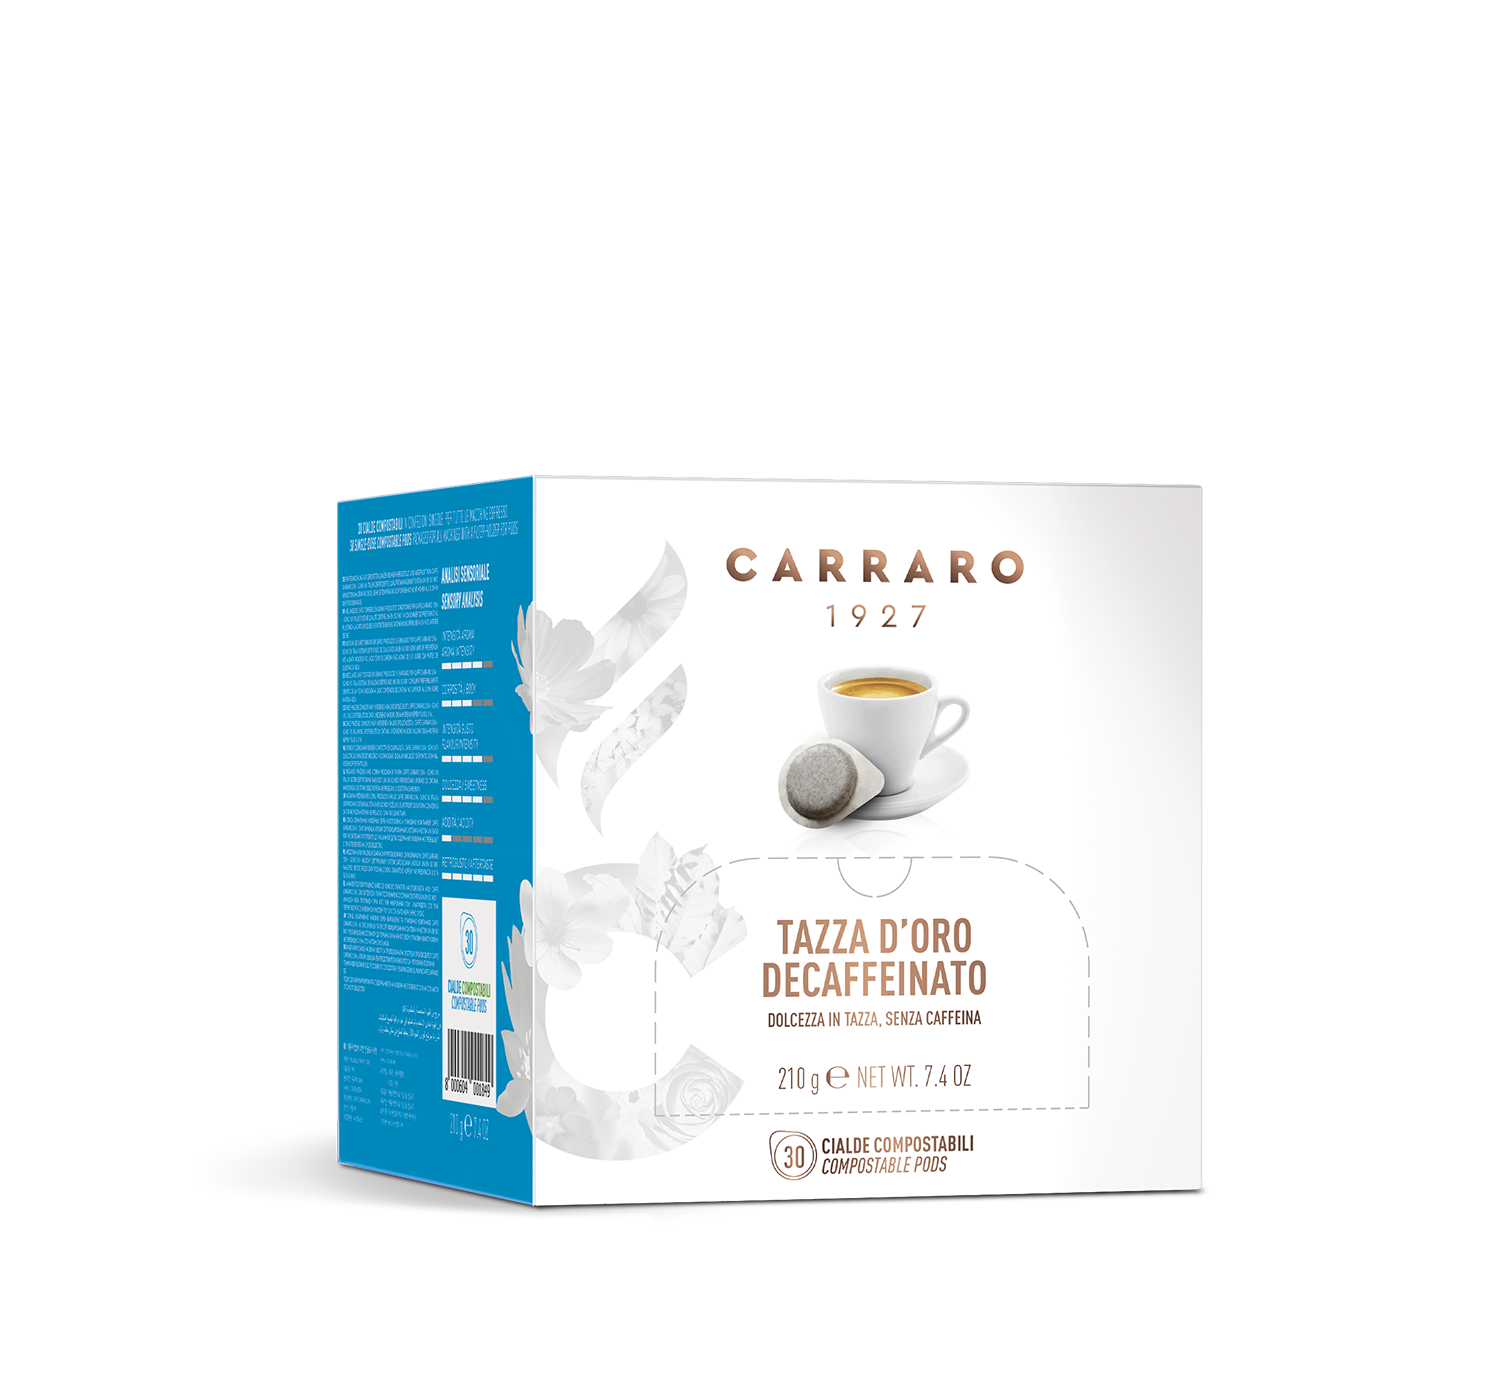 Decaffeinated - Tazza d’Oro decaffeinato – box with 30 pods - Shop online Caffè Carraro